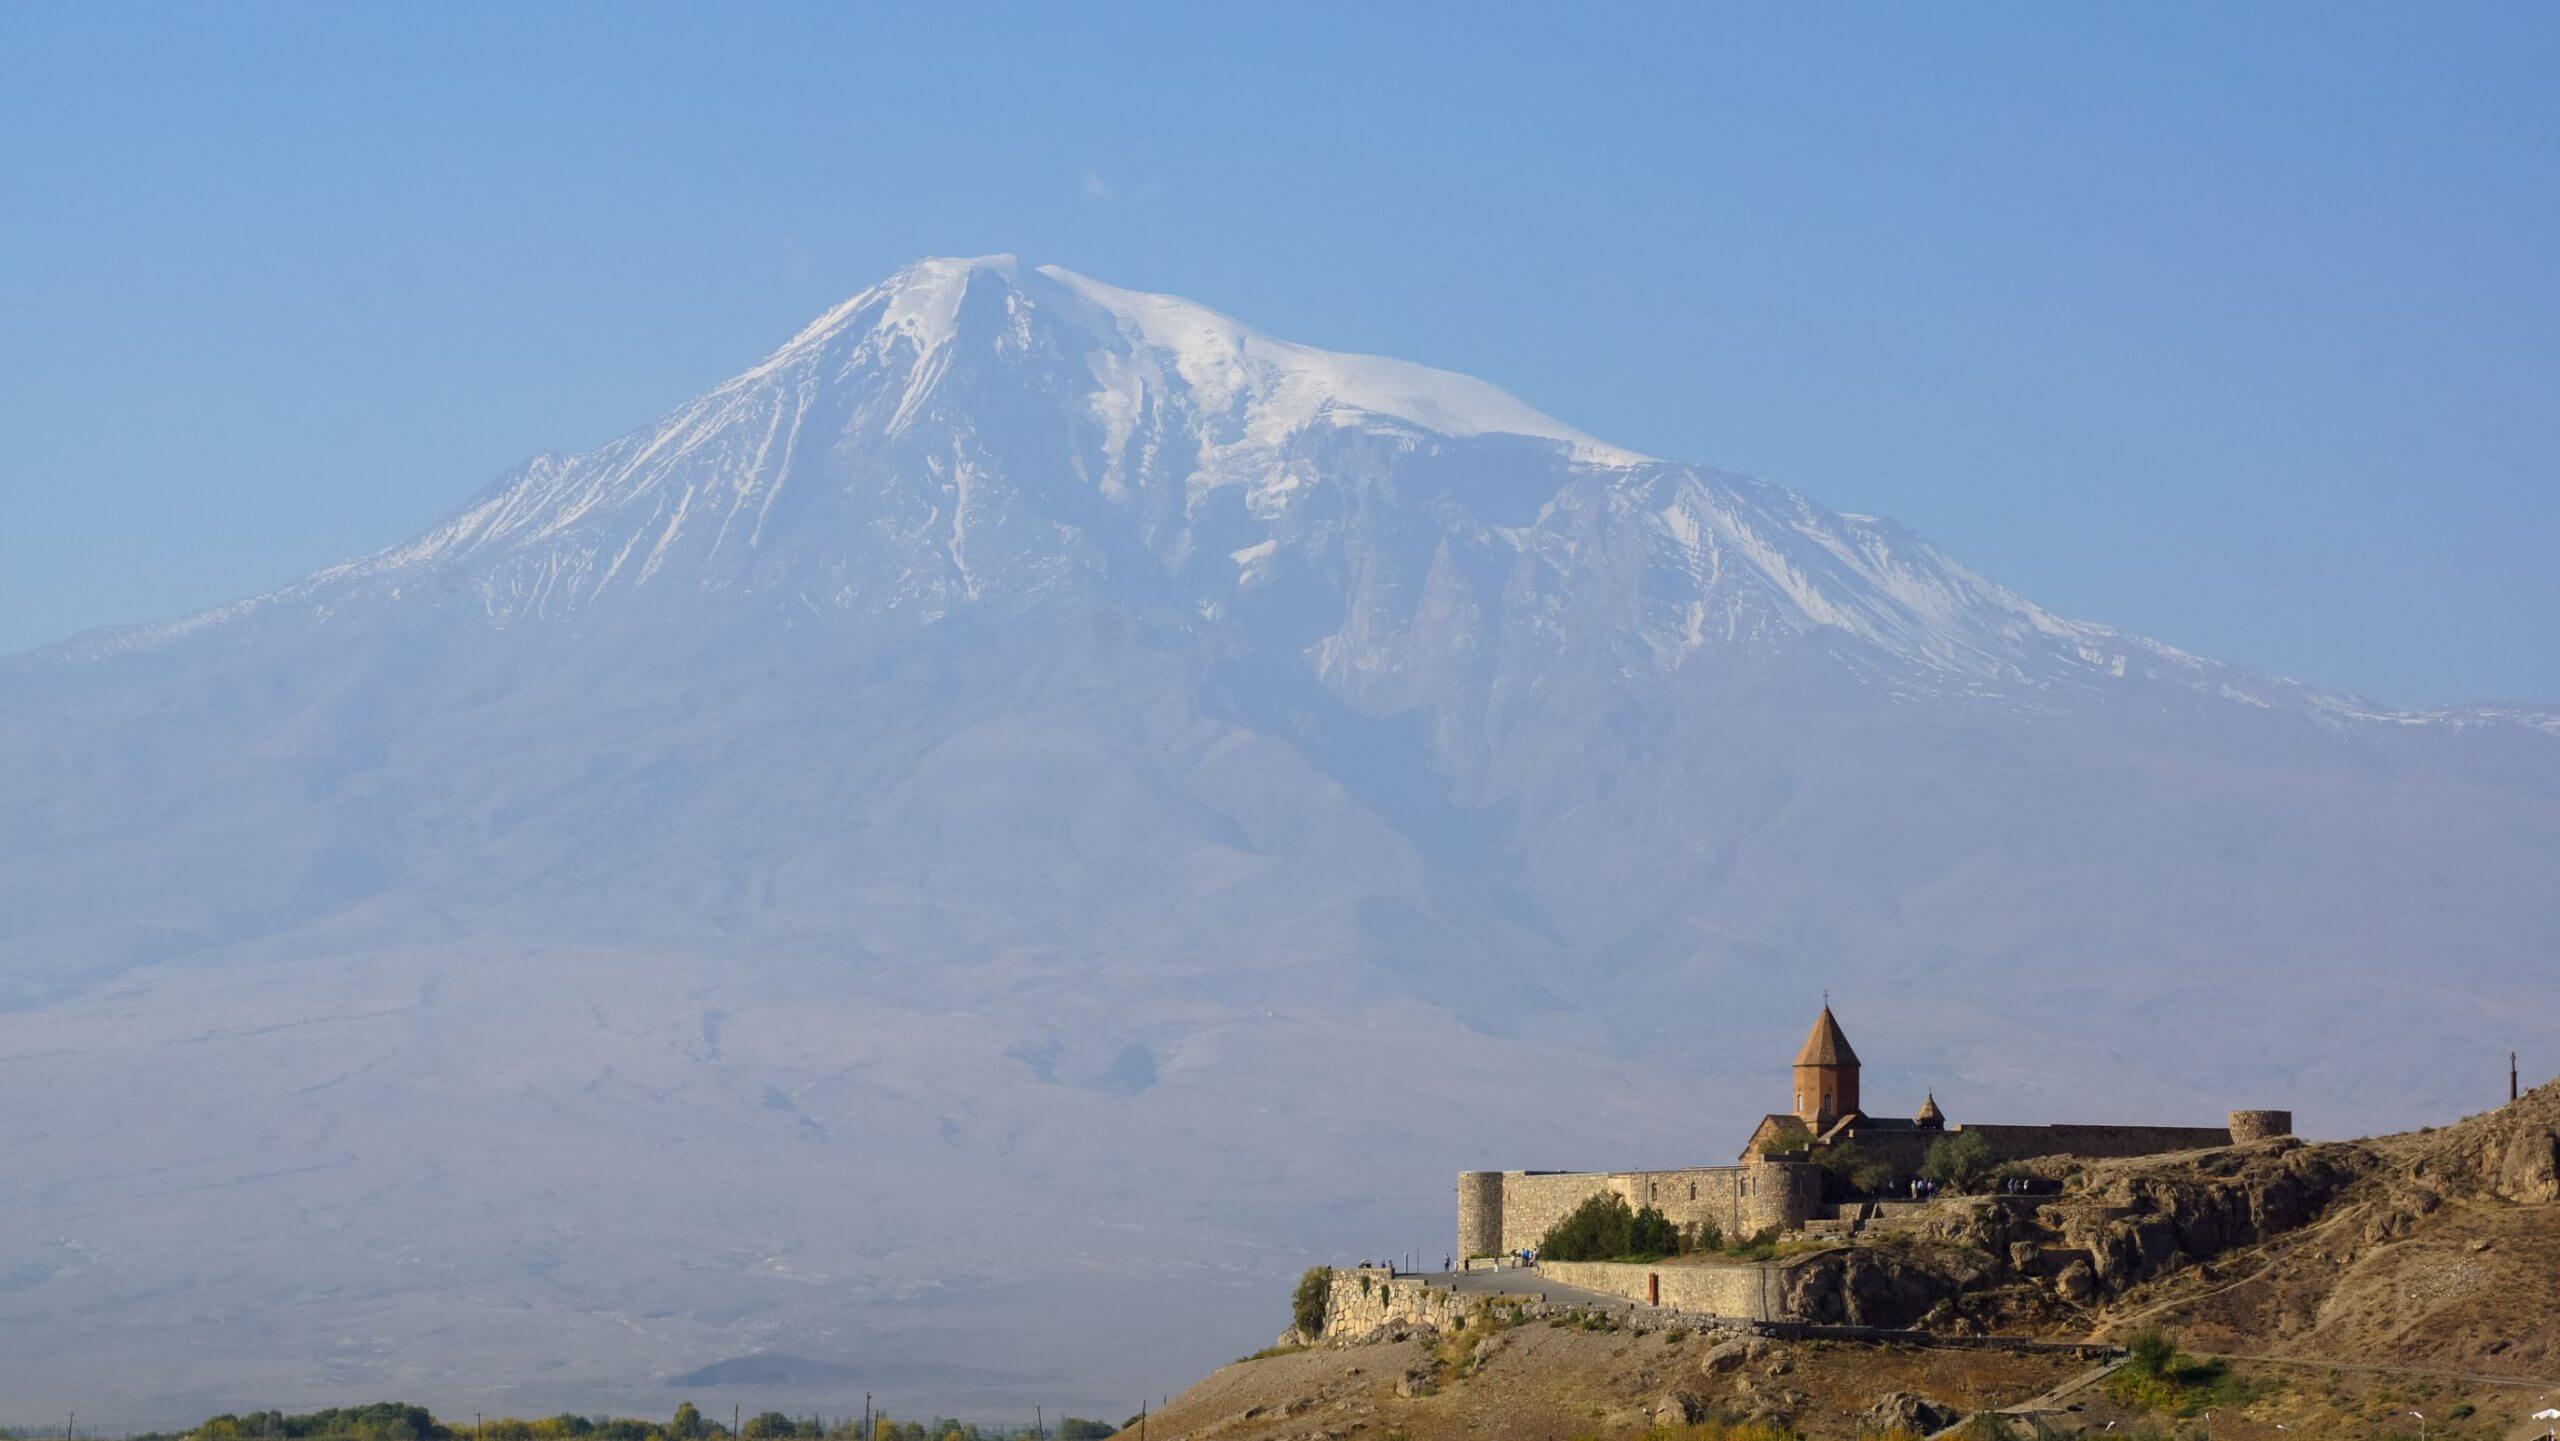 2-Day Armenia: Beautiful Tatev in Two Days